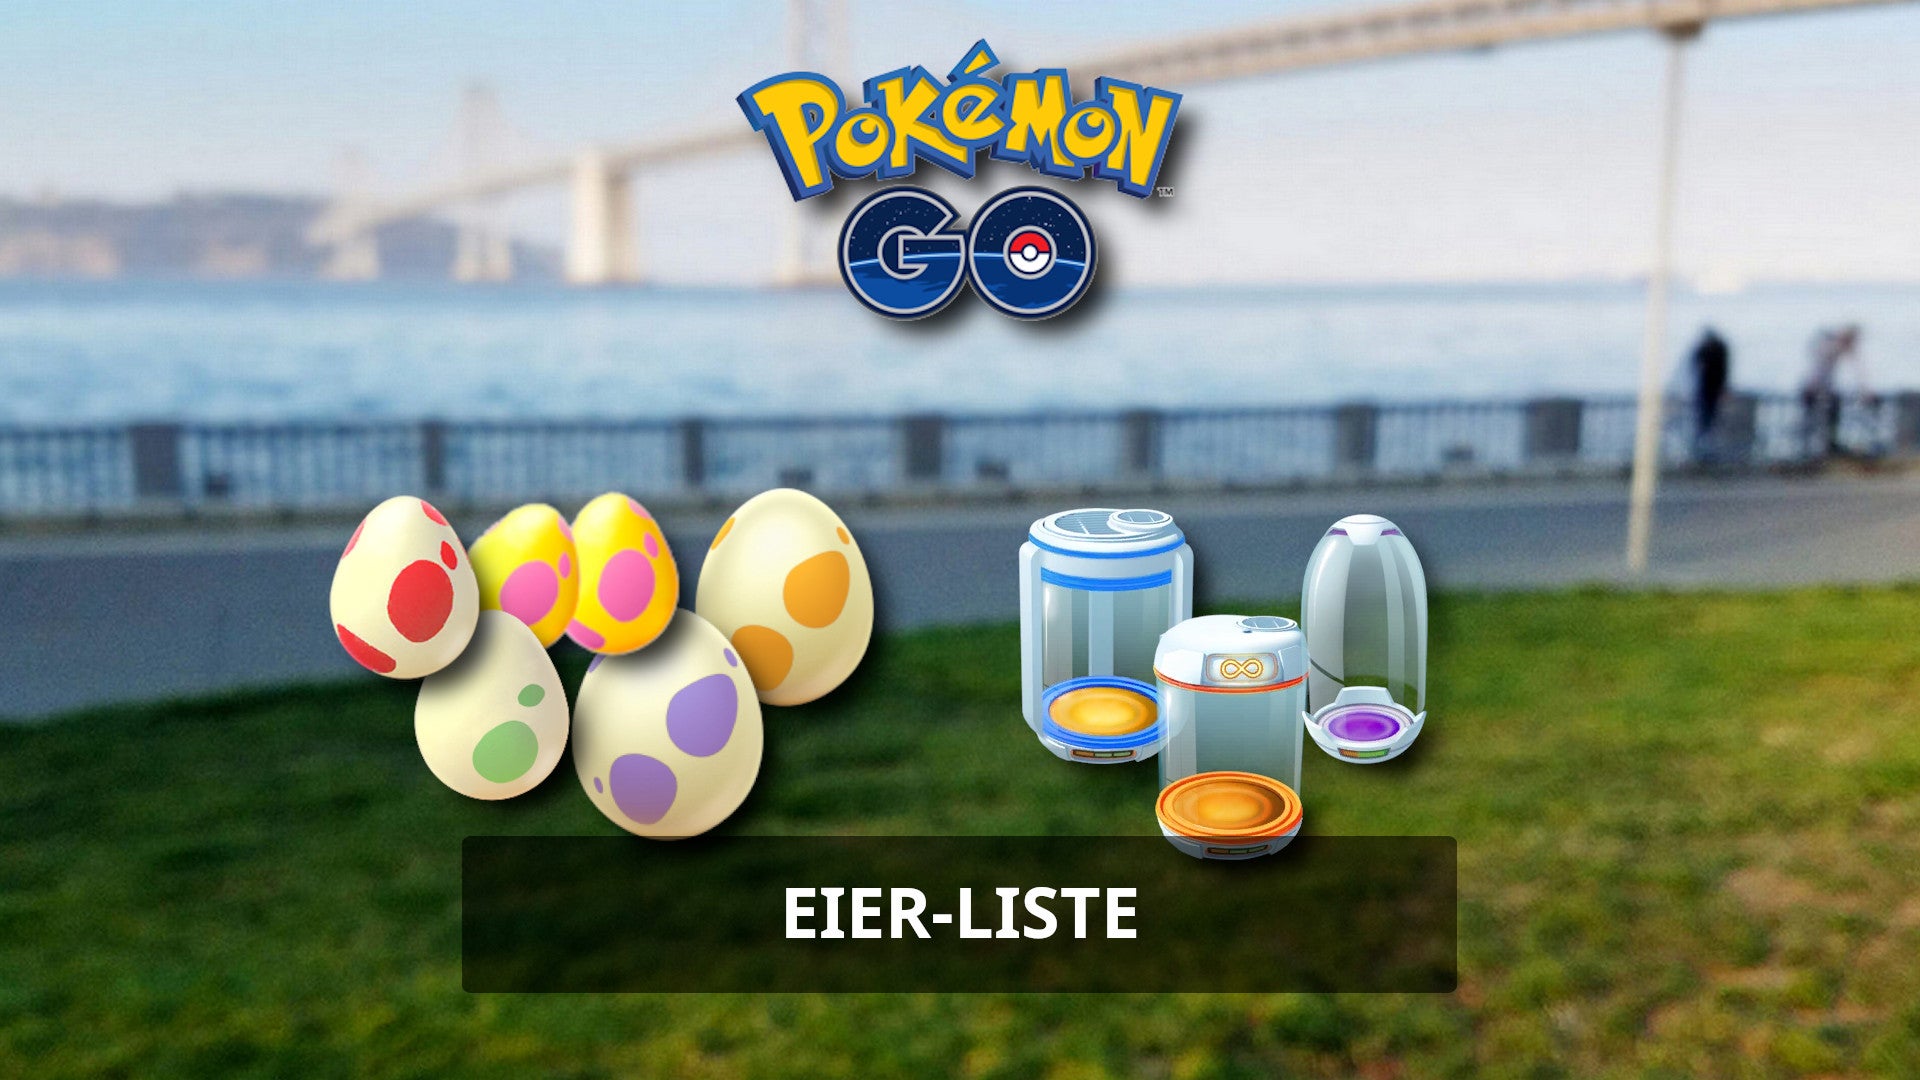 Bilder zu Pokémon Go Eier ausbrüten: Liste für August 2022 - Das schlüpft 2km, 5km, 7km, 10km und 12km Eiern